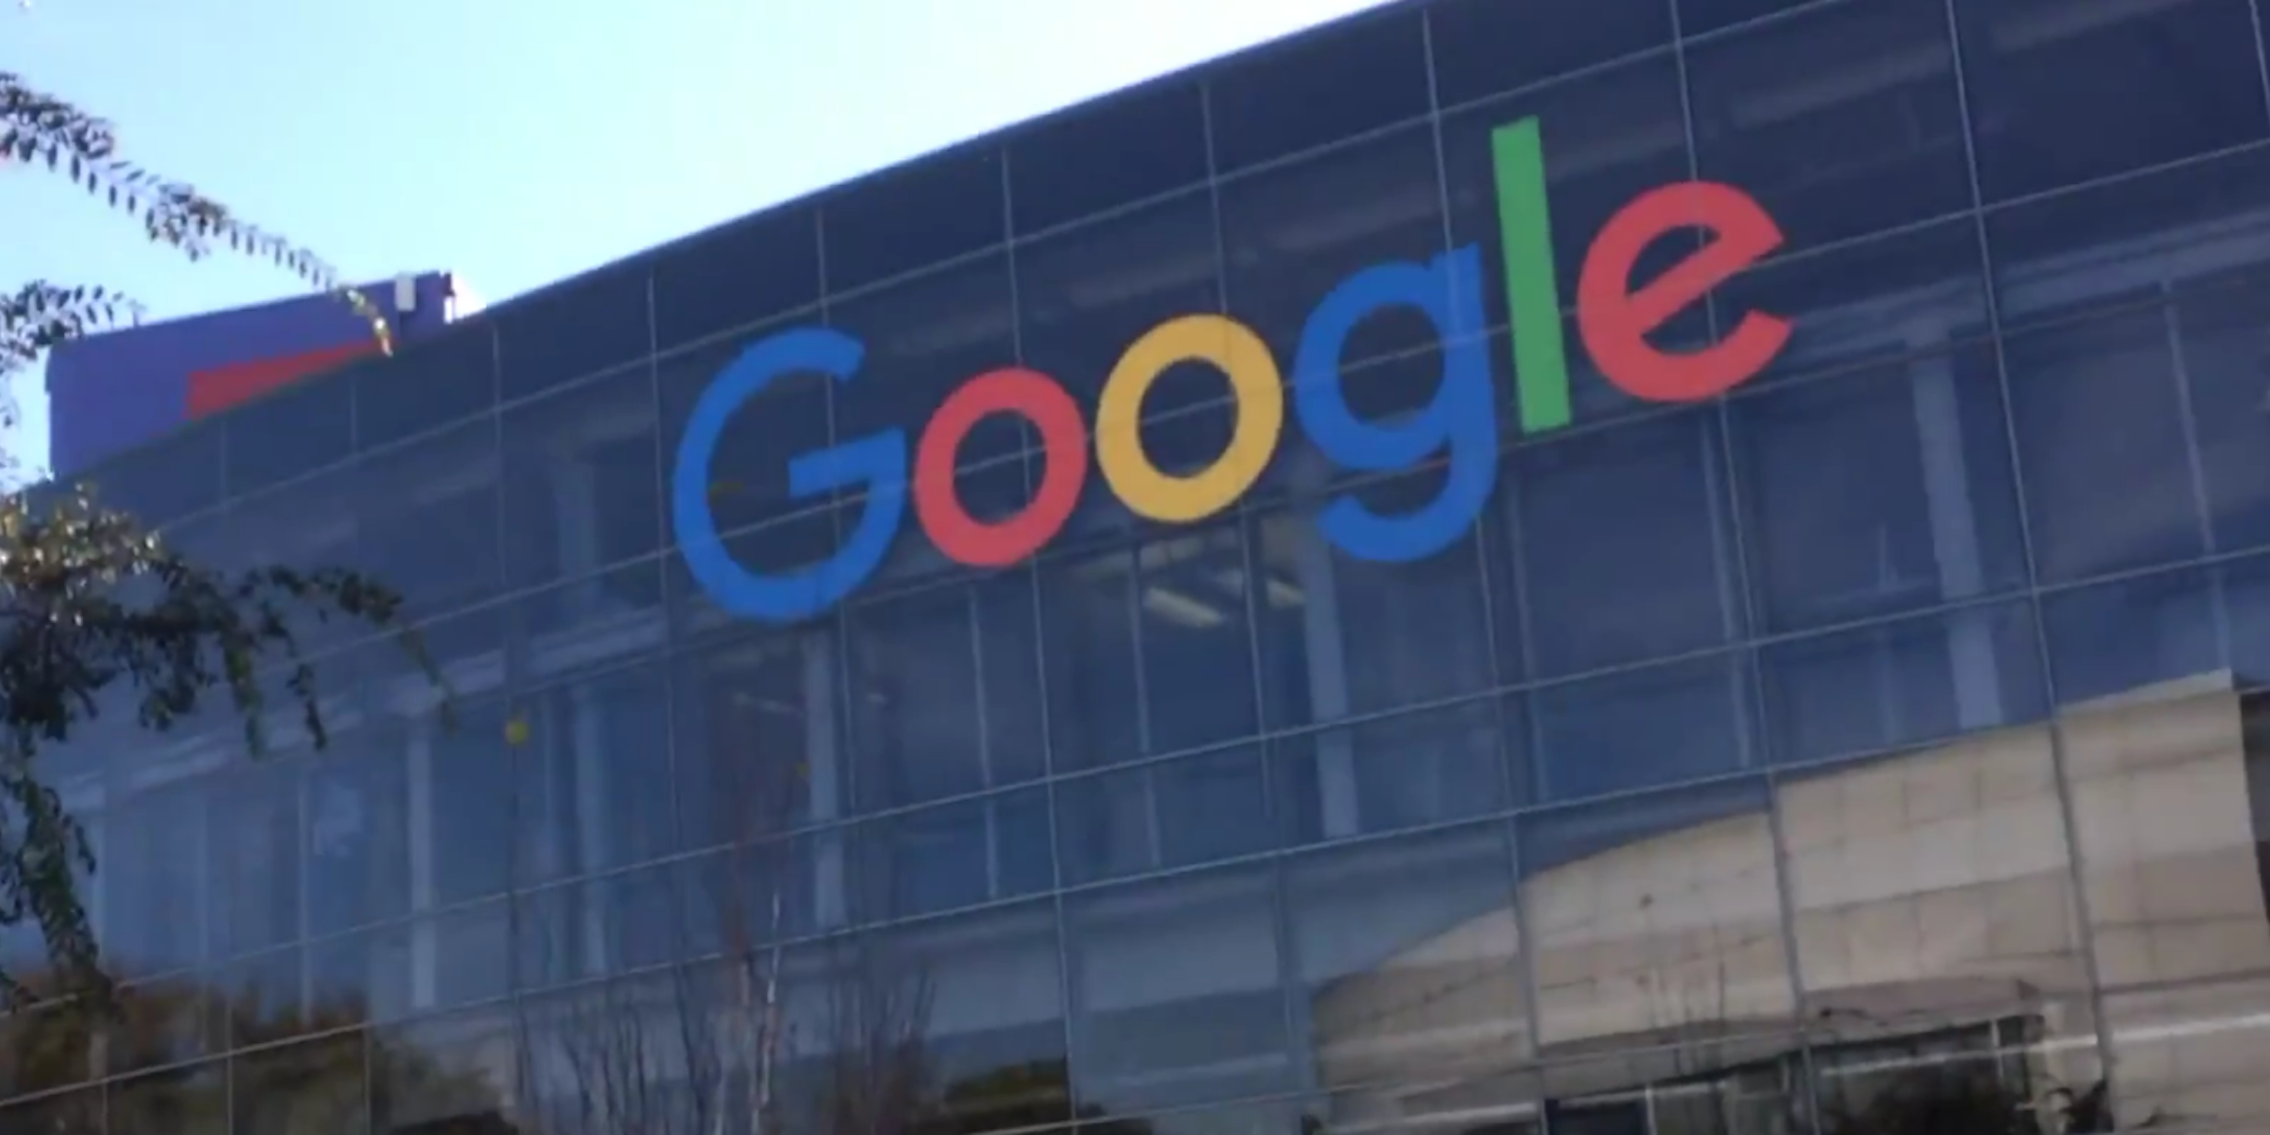 Google California headquarters